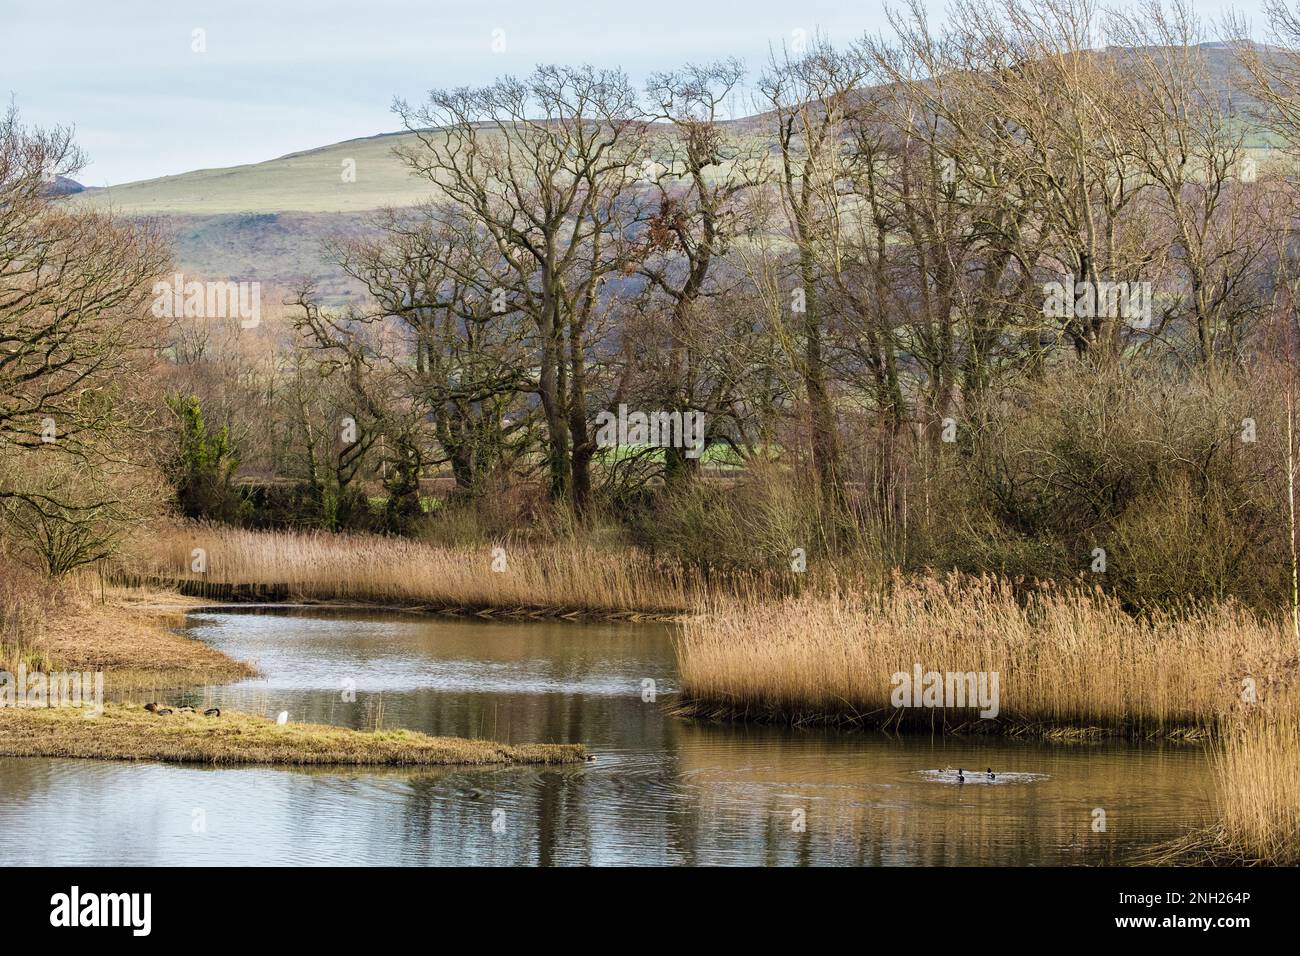 Vue sur les lagons bordés de roseaux dans la réserve naturelle. The Spinnies, Aberogwen, Bangor, Gwynedd, pays de Galles, Royaume-Uni, Grande-Bretagne Banque D'Images